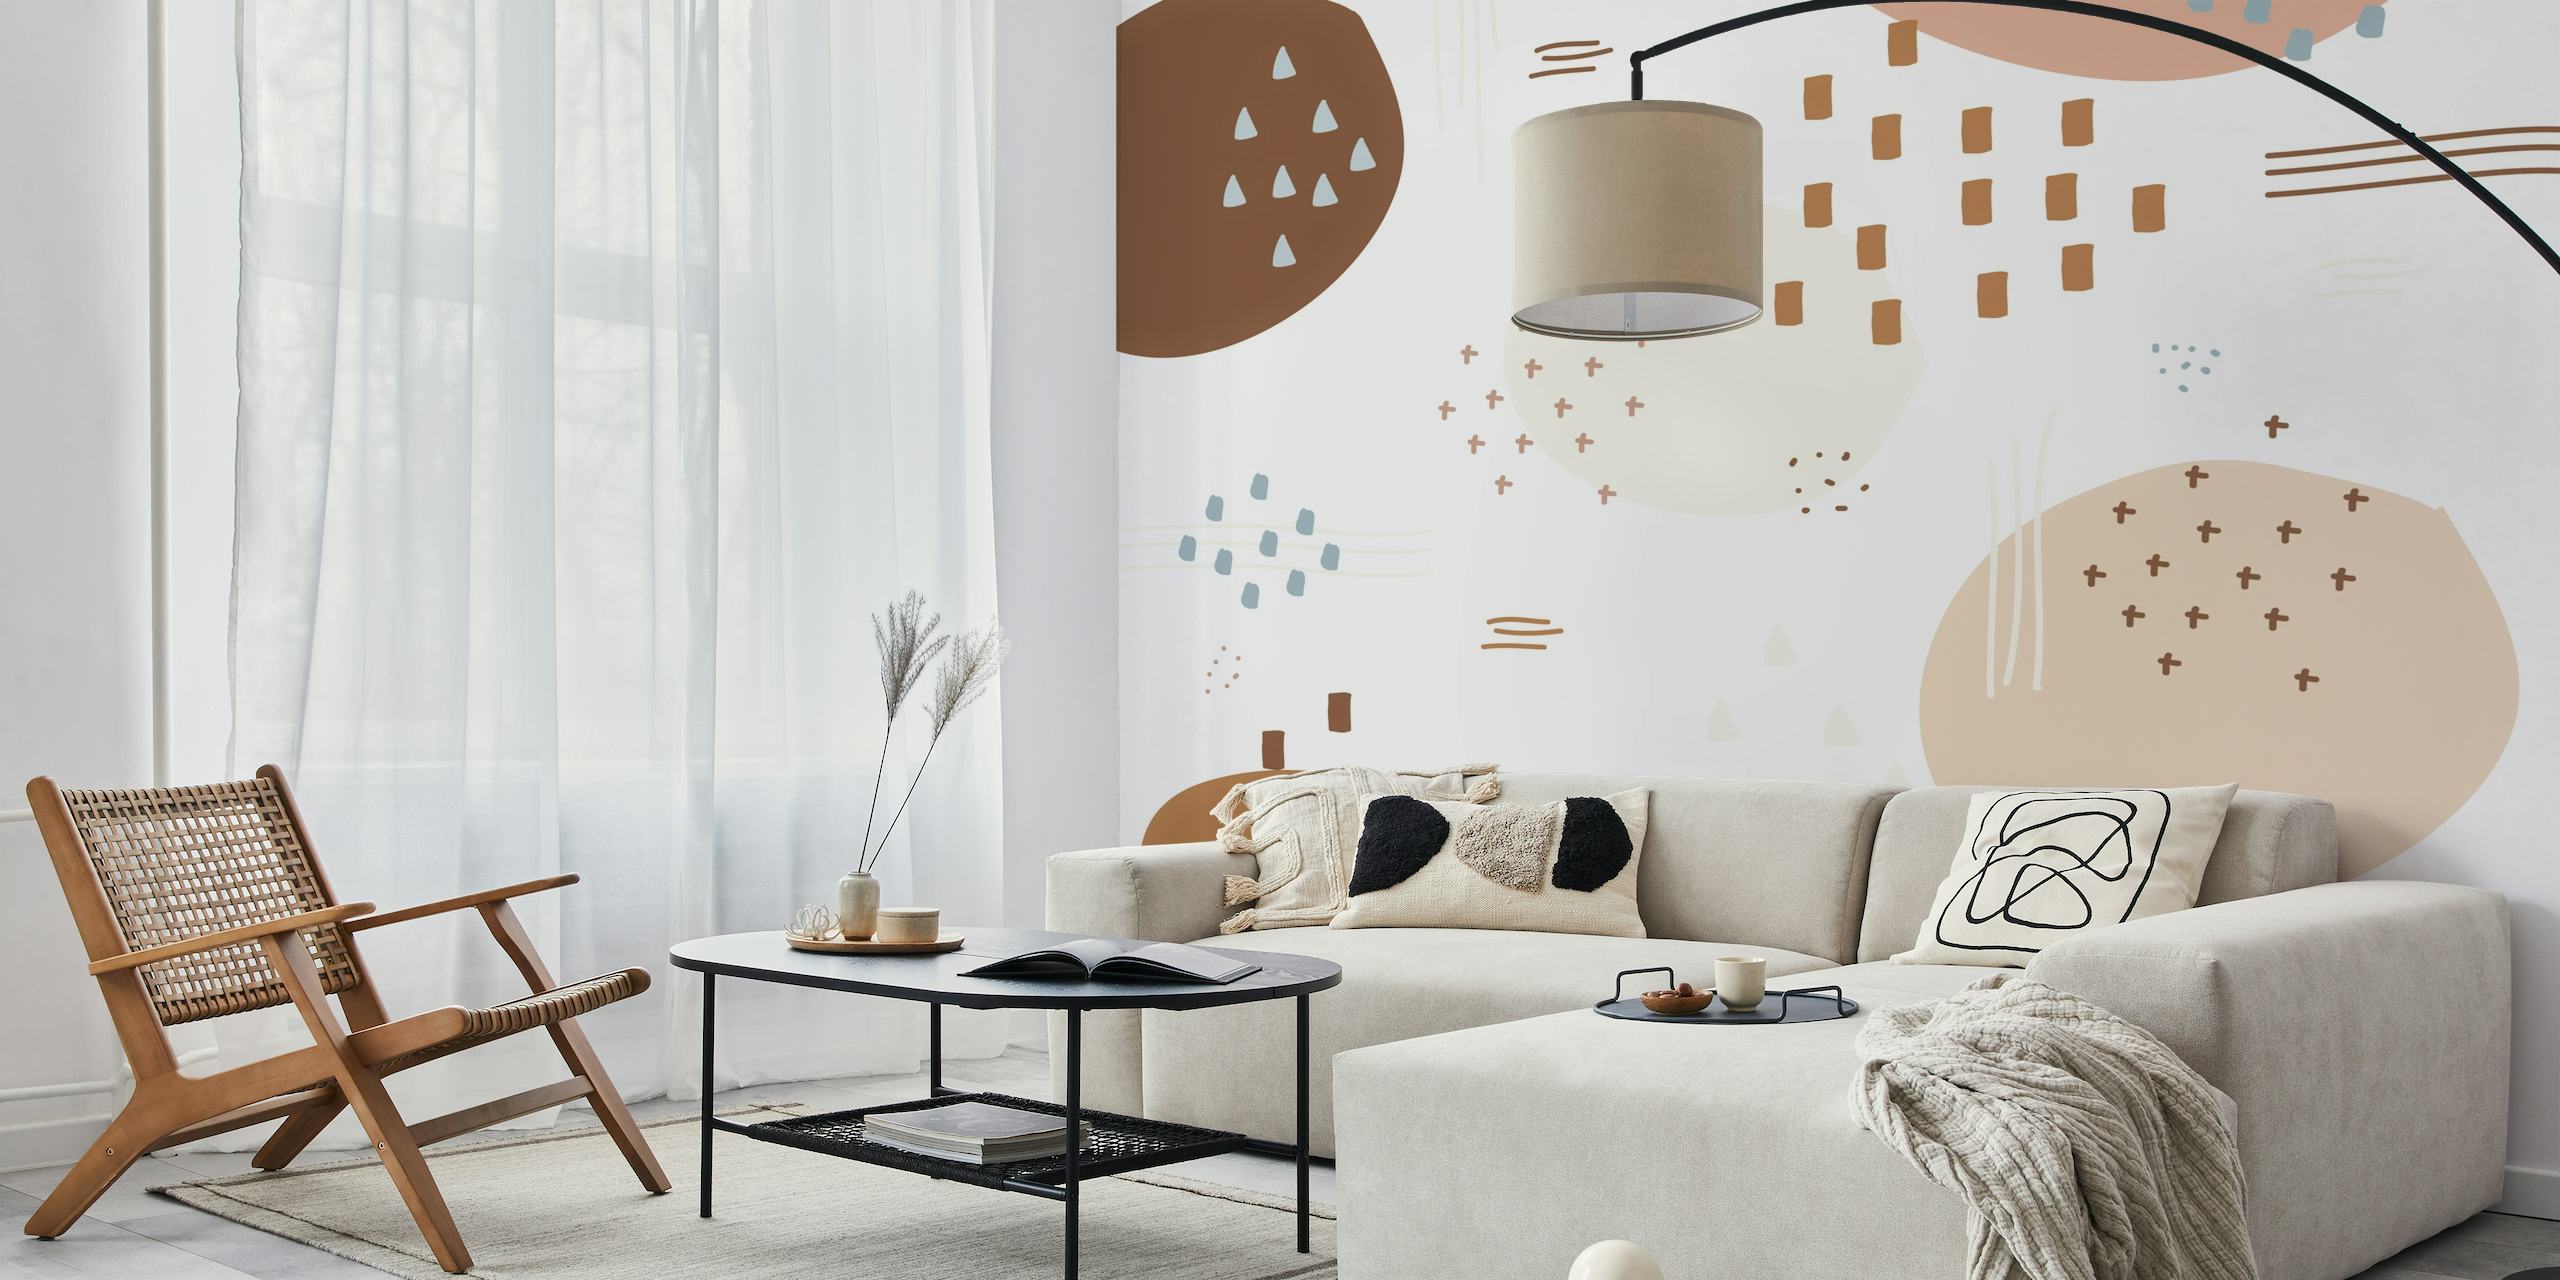 Fotomural moderno abstracto en marrón y beige con diseño minimalista